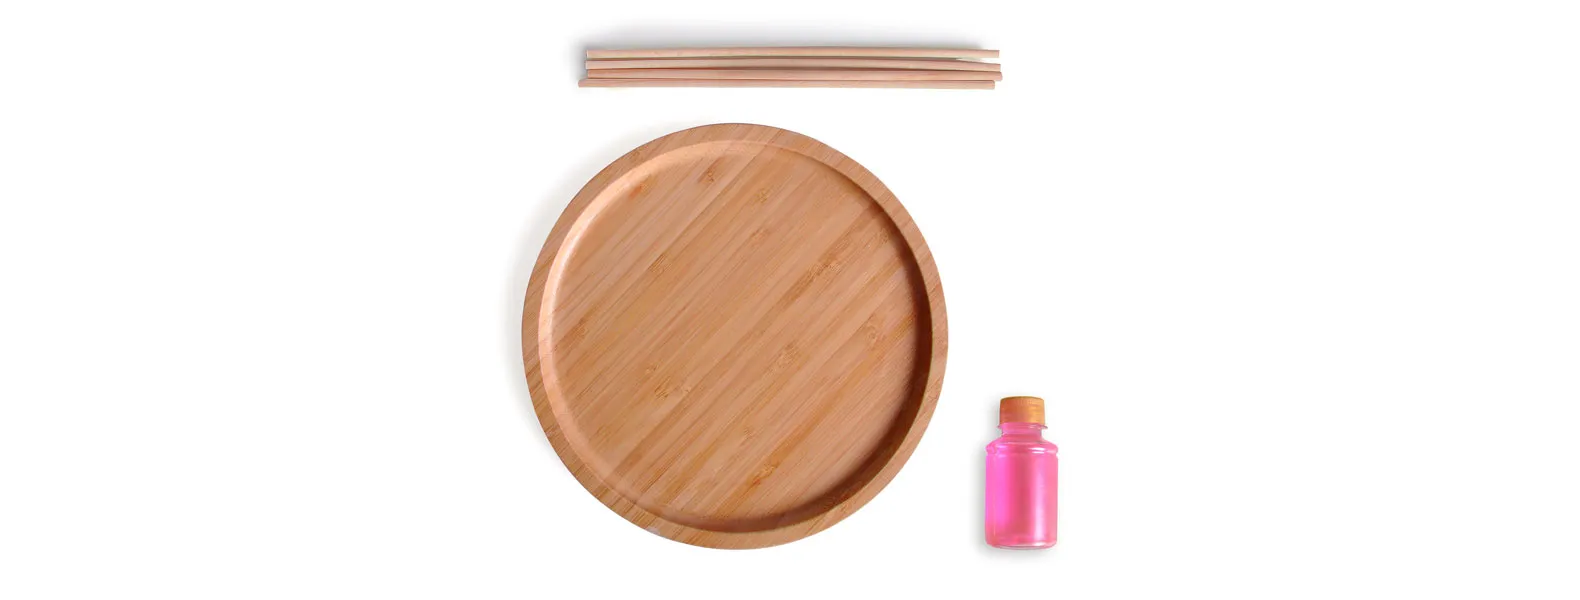 Kit para bandeja e aromatizador. Conta com bandeja redonda em bambu e aromatizador de ambiente com fragrância de orquídea.